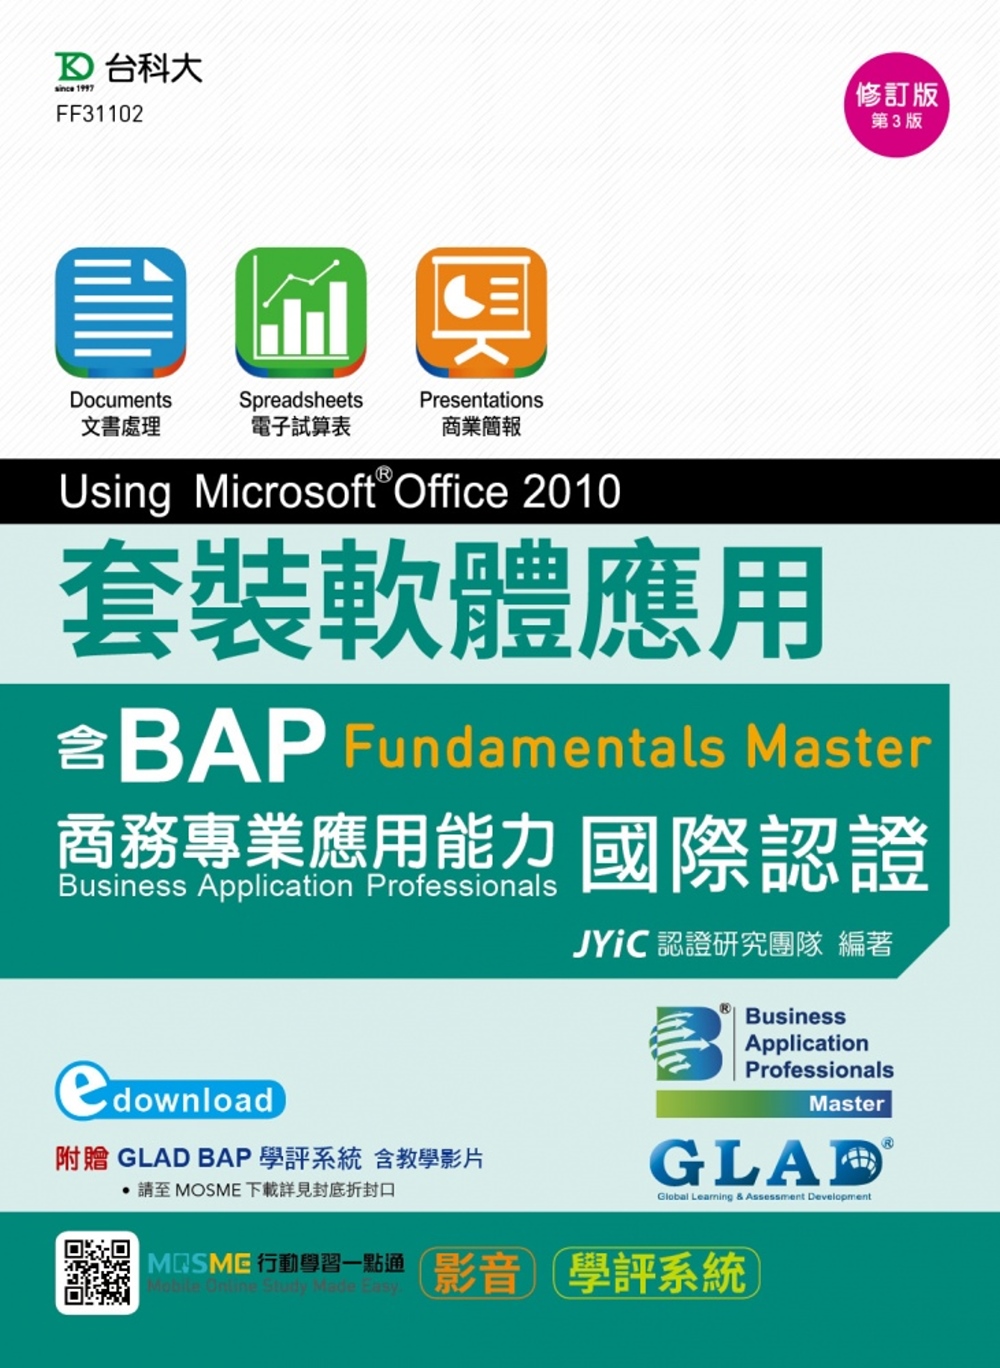 套裝軟體應用Using Microsoft Office 2010：邁向BAP Fundamentals Master商務專業應用能力國際認證 - 最新版(第三版) - 附MOSME行動學習一點通：影音．學評系統